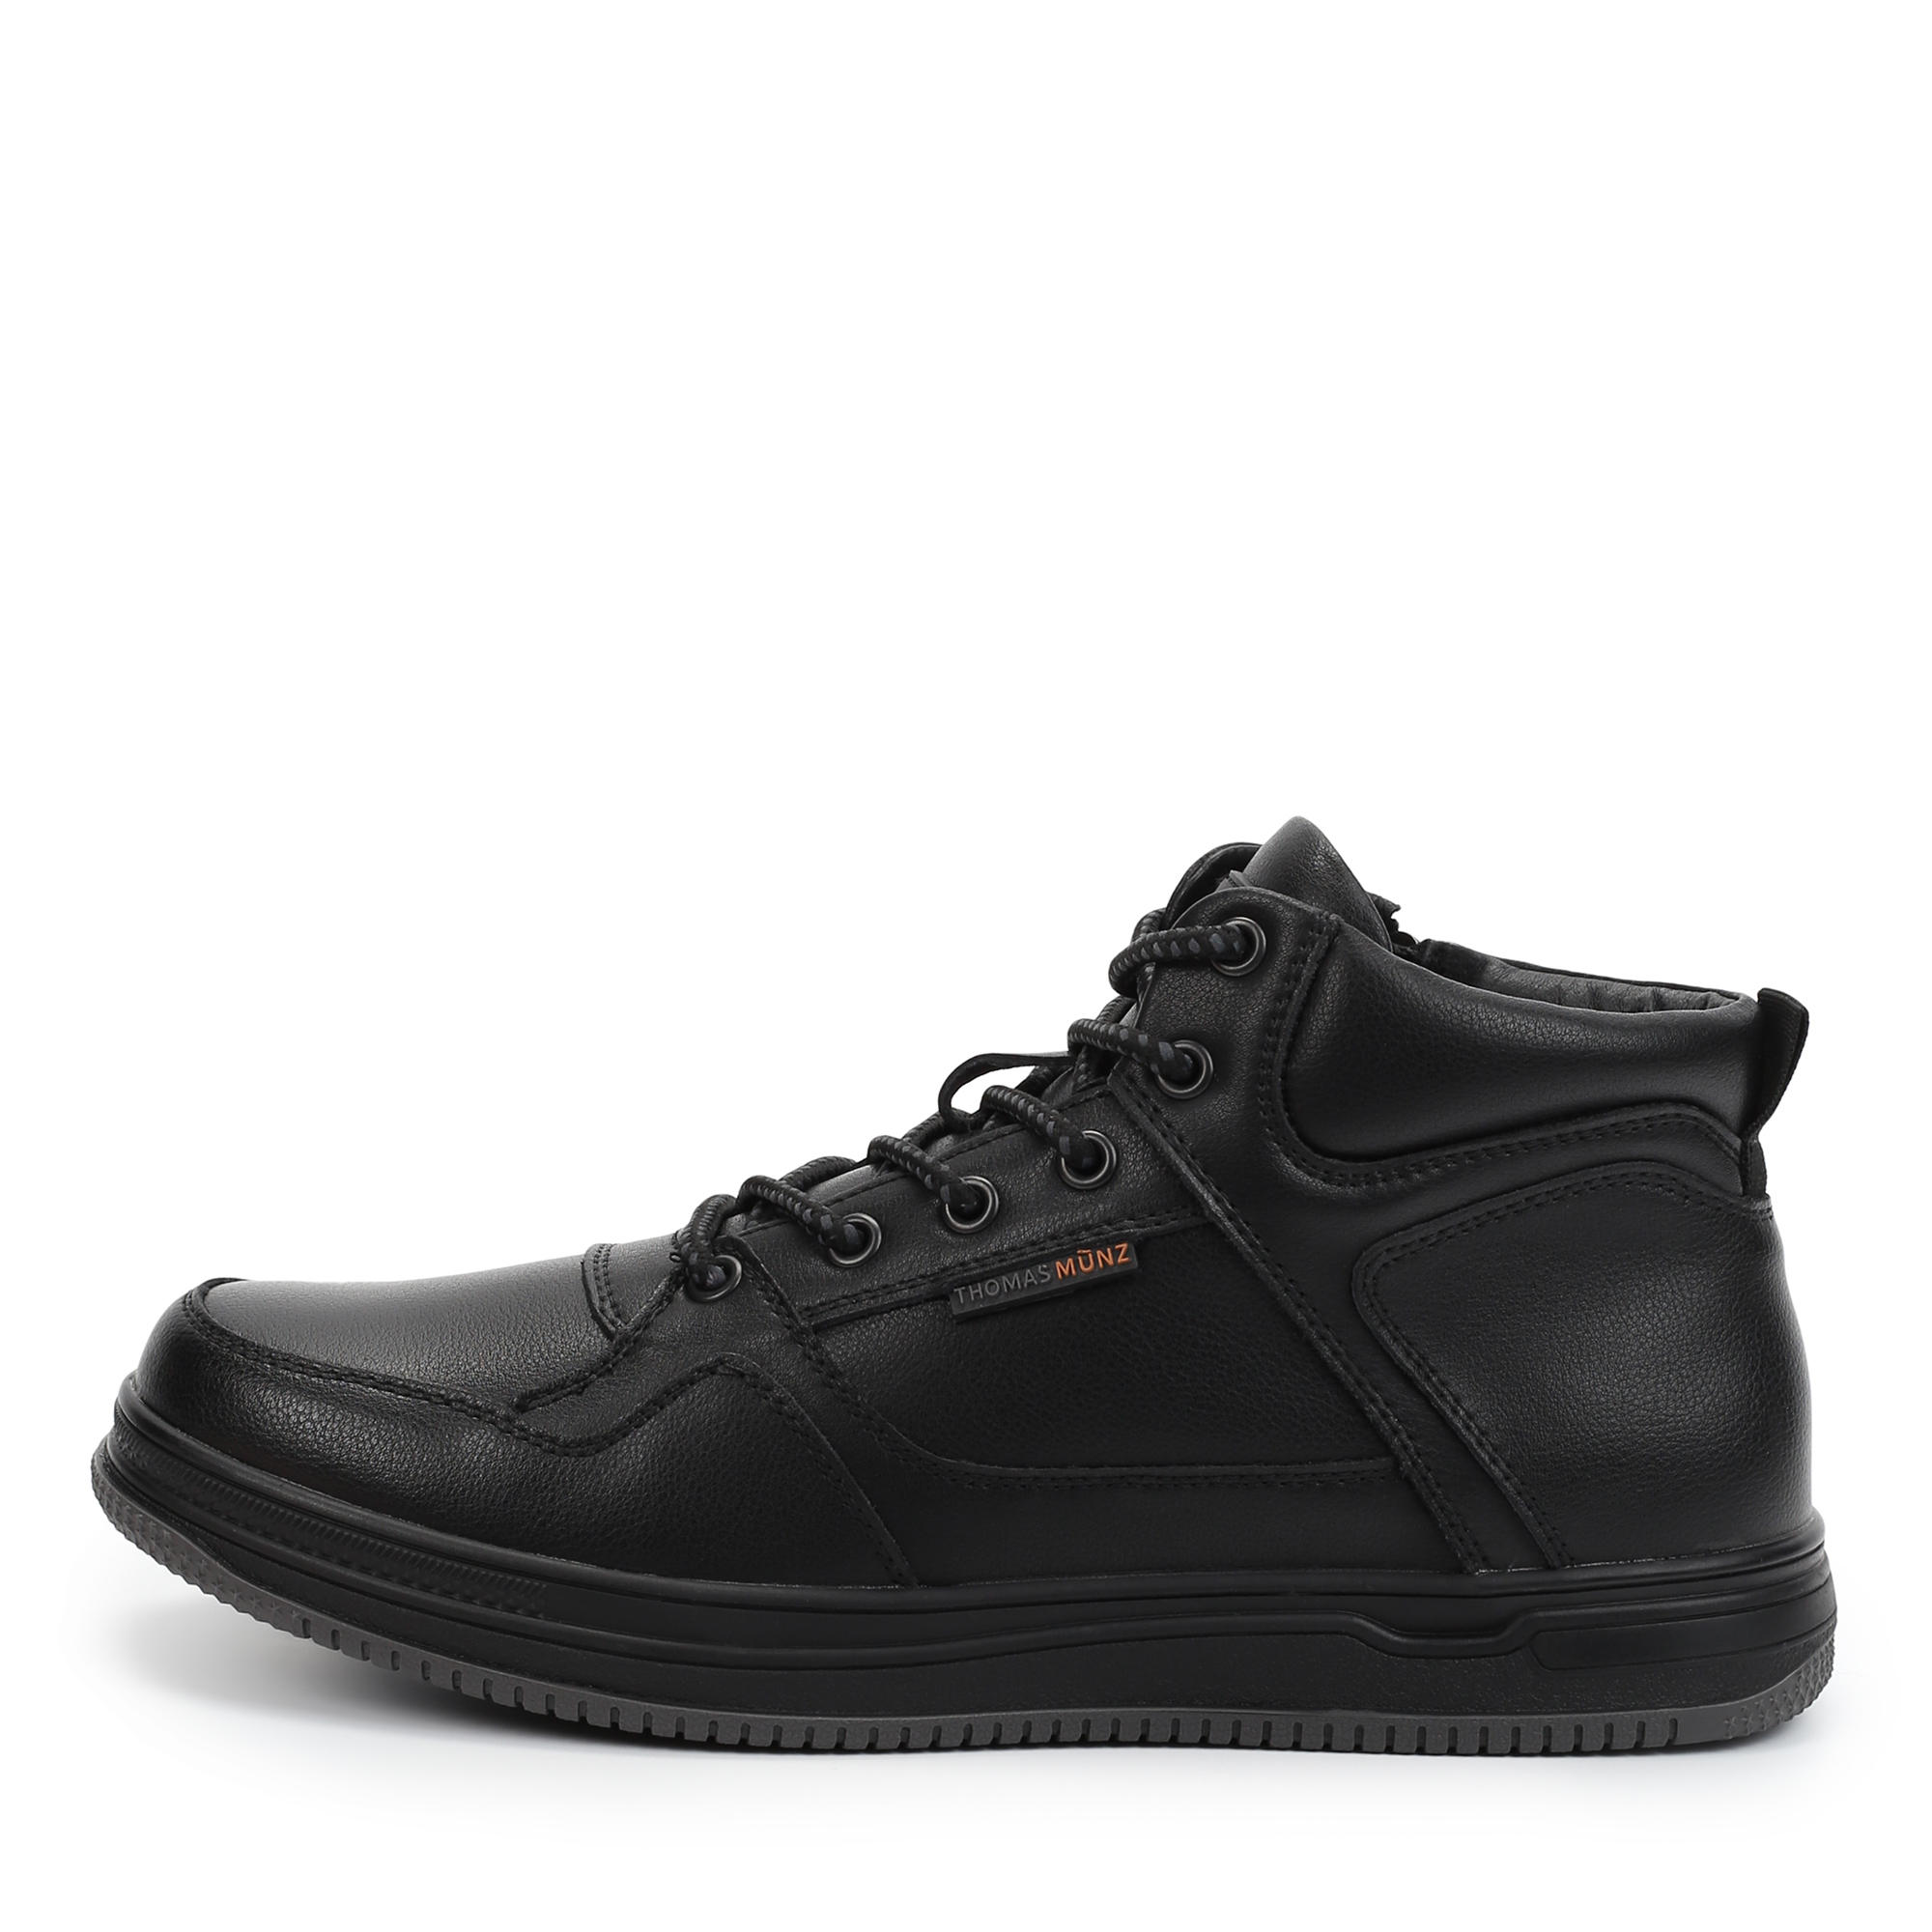 Ботинки Thomas Munz 116-3431A-2602, цвет черный, размер 42